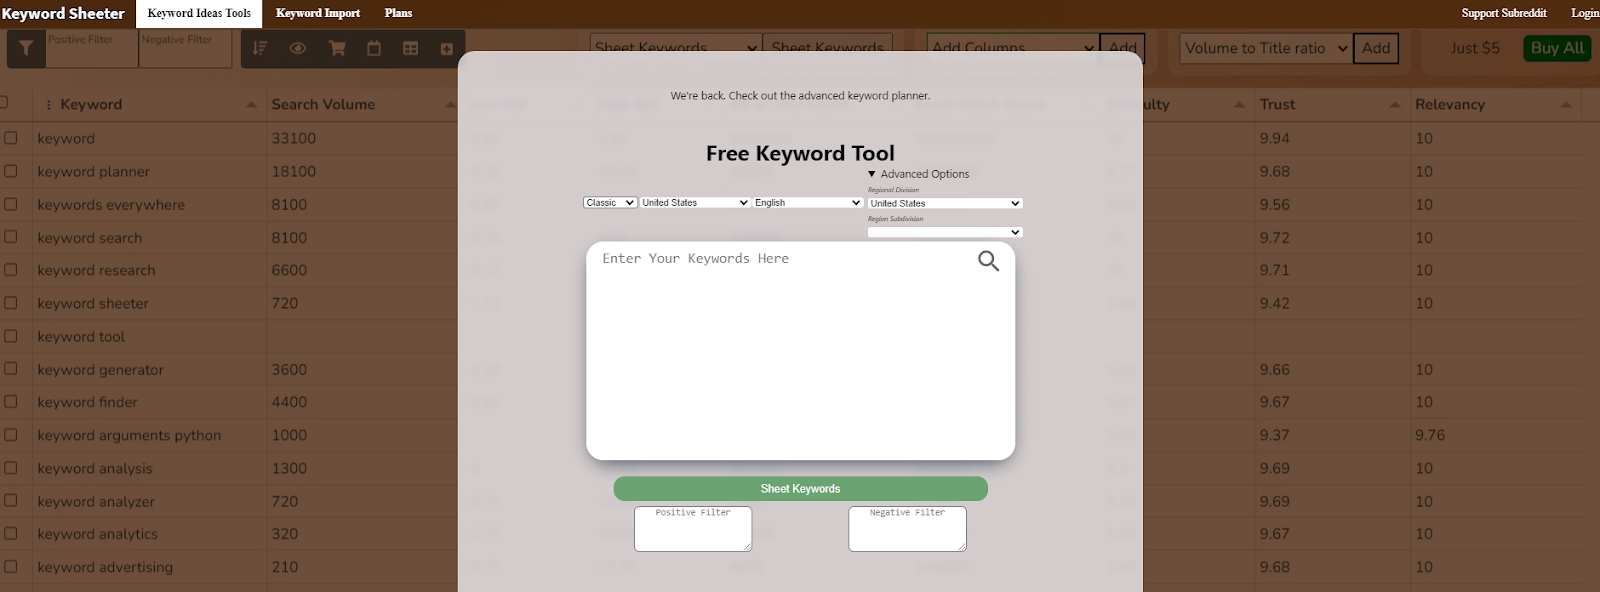 Скриншот домашней страницы инструмента для подбора ключевых слов